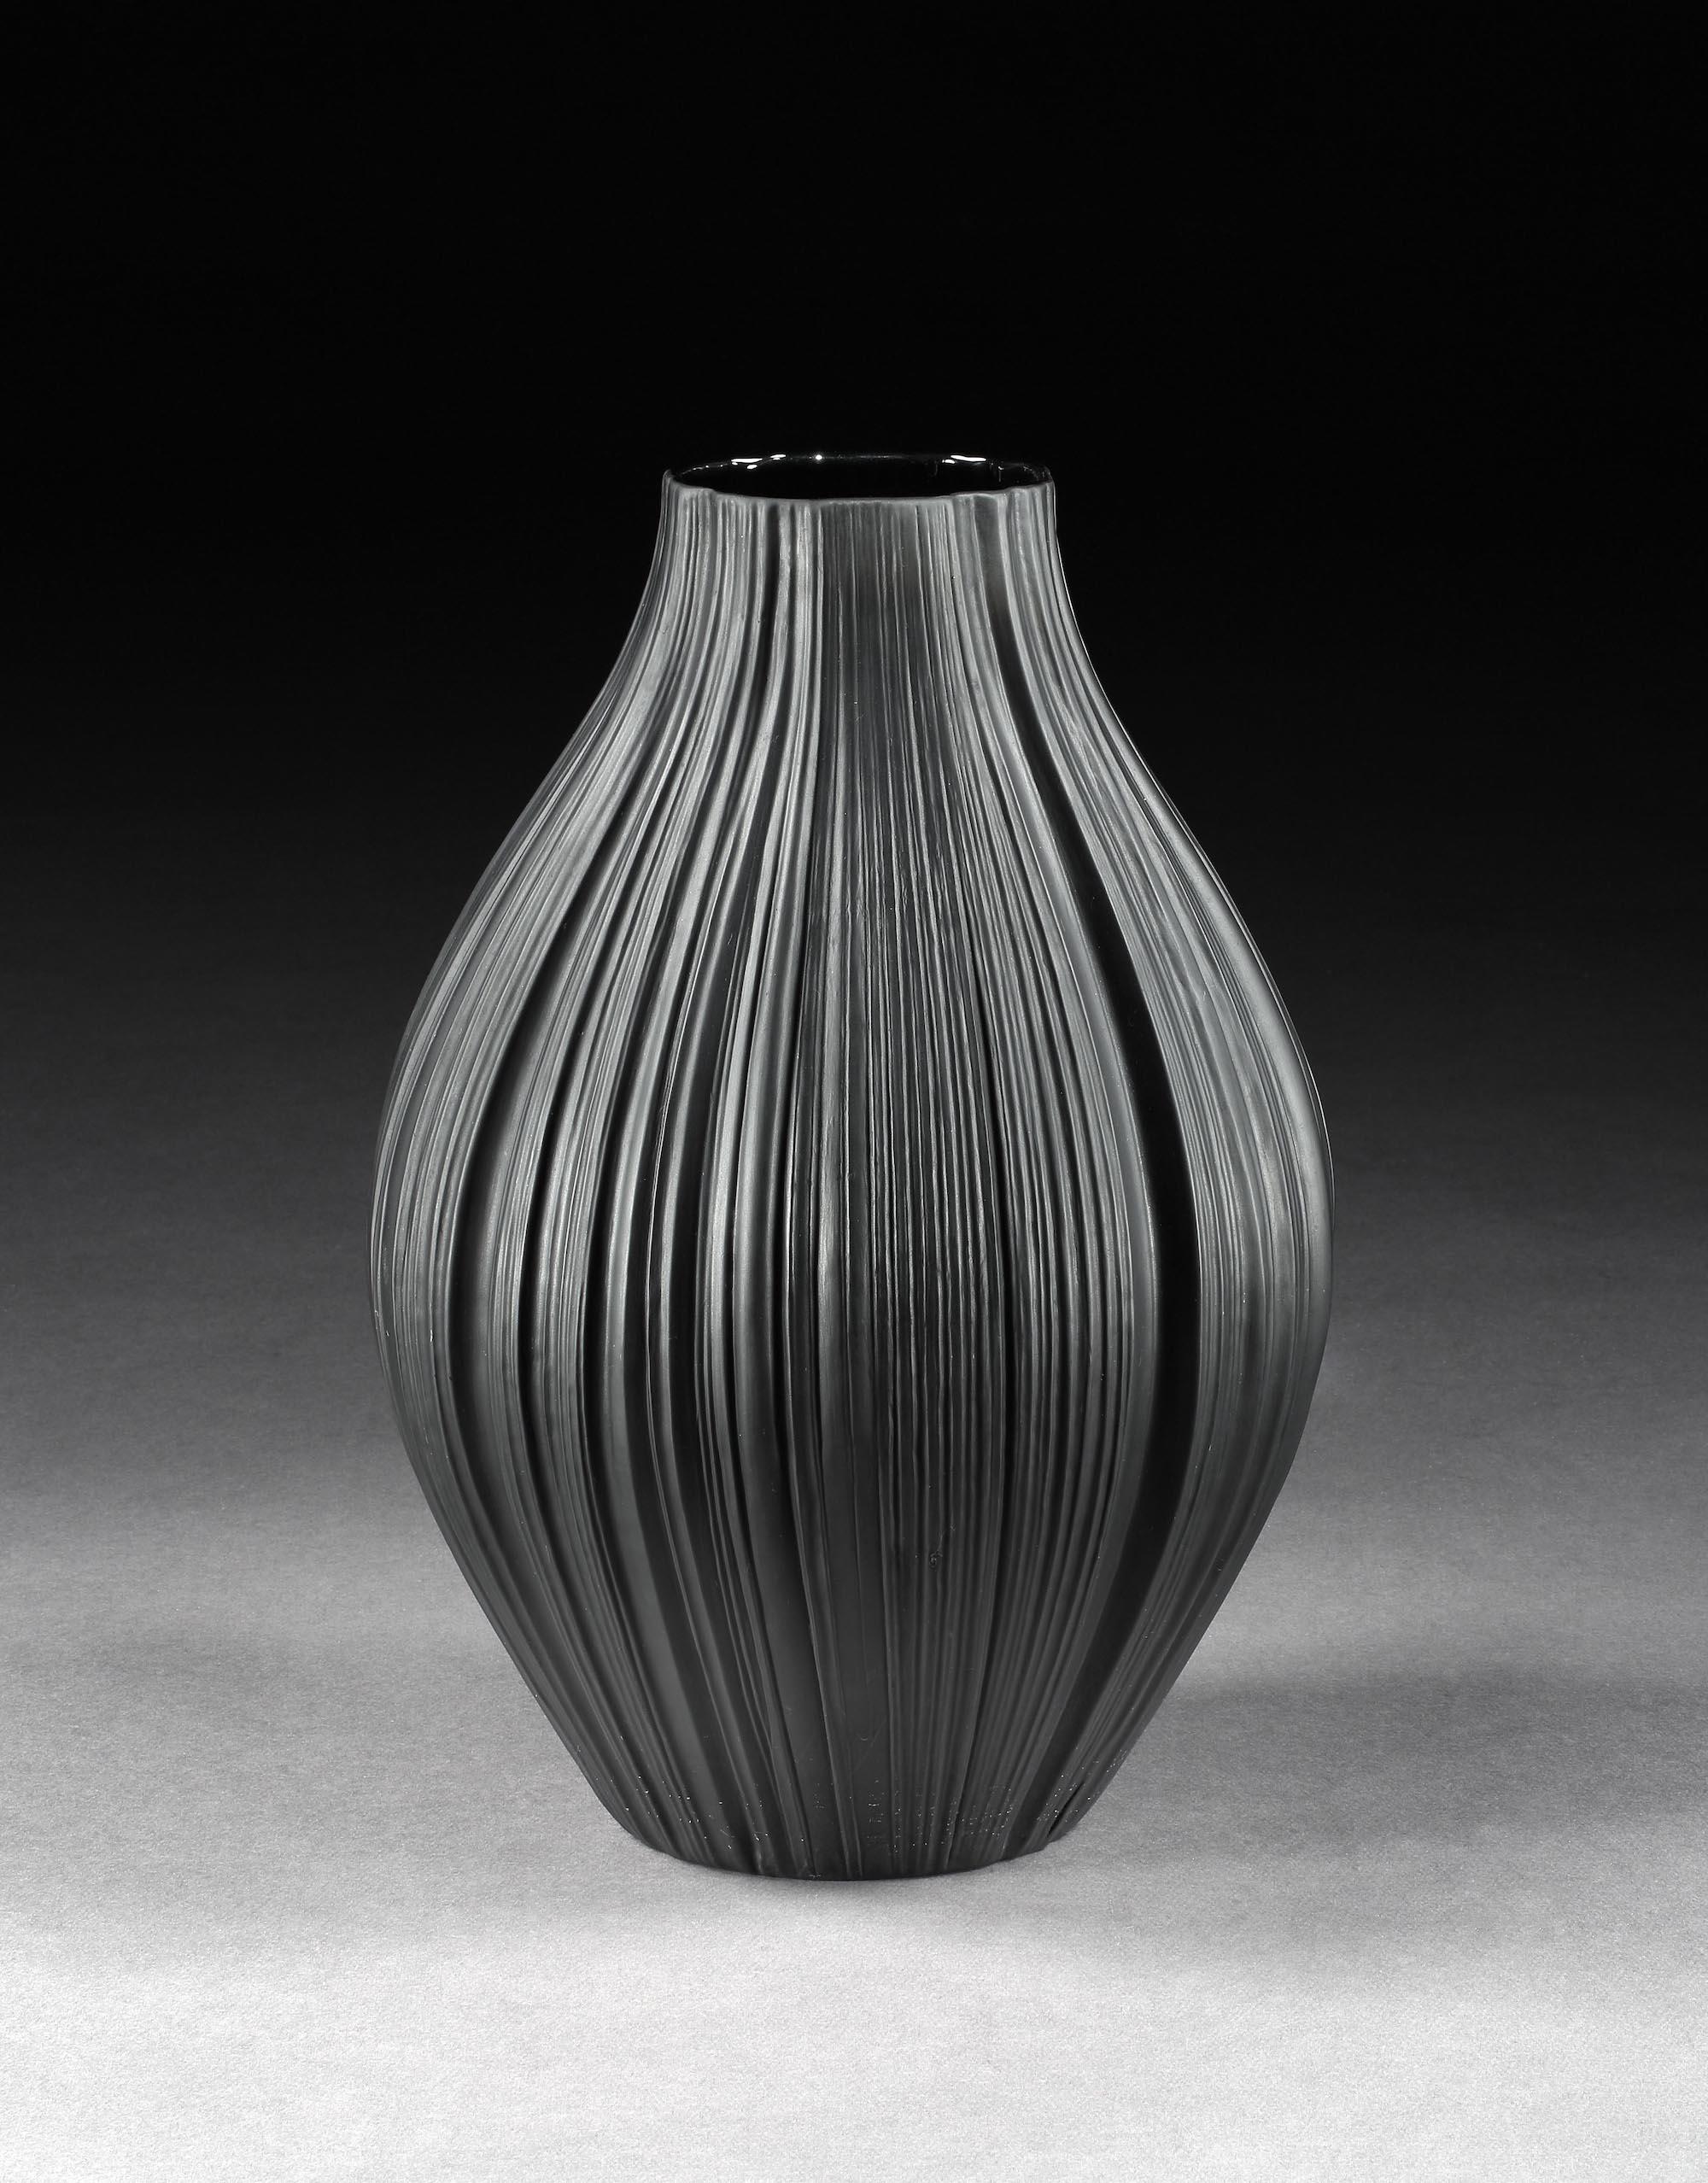 Martin Freyer pour le Studio Rosenthal : Vase massif, noir, en porcelaine, plissé ou plissé, 1968

- Le vase plissé est connu comme la meilleure œuvre de Martin Freyer, qui travaille sur le thème ancien du drapé dans l'art.
Freyer a travaillé en